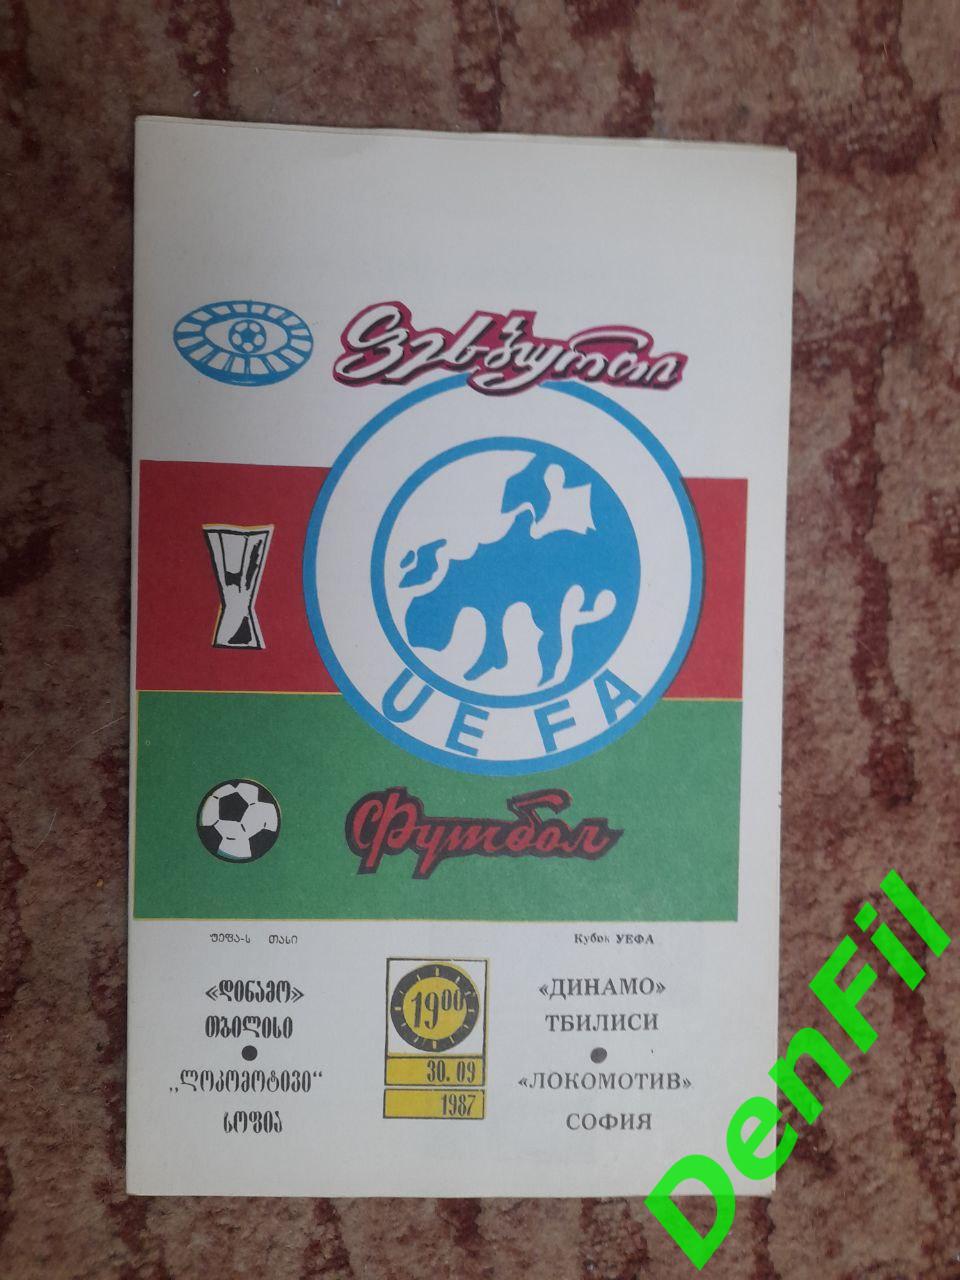 Динамо Тбилиси - Локомотив София 1987